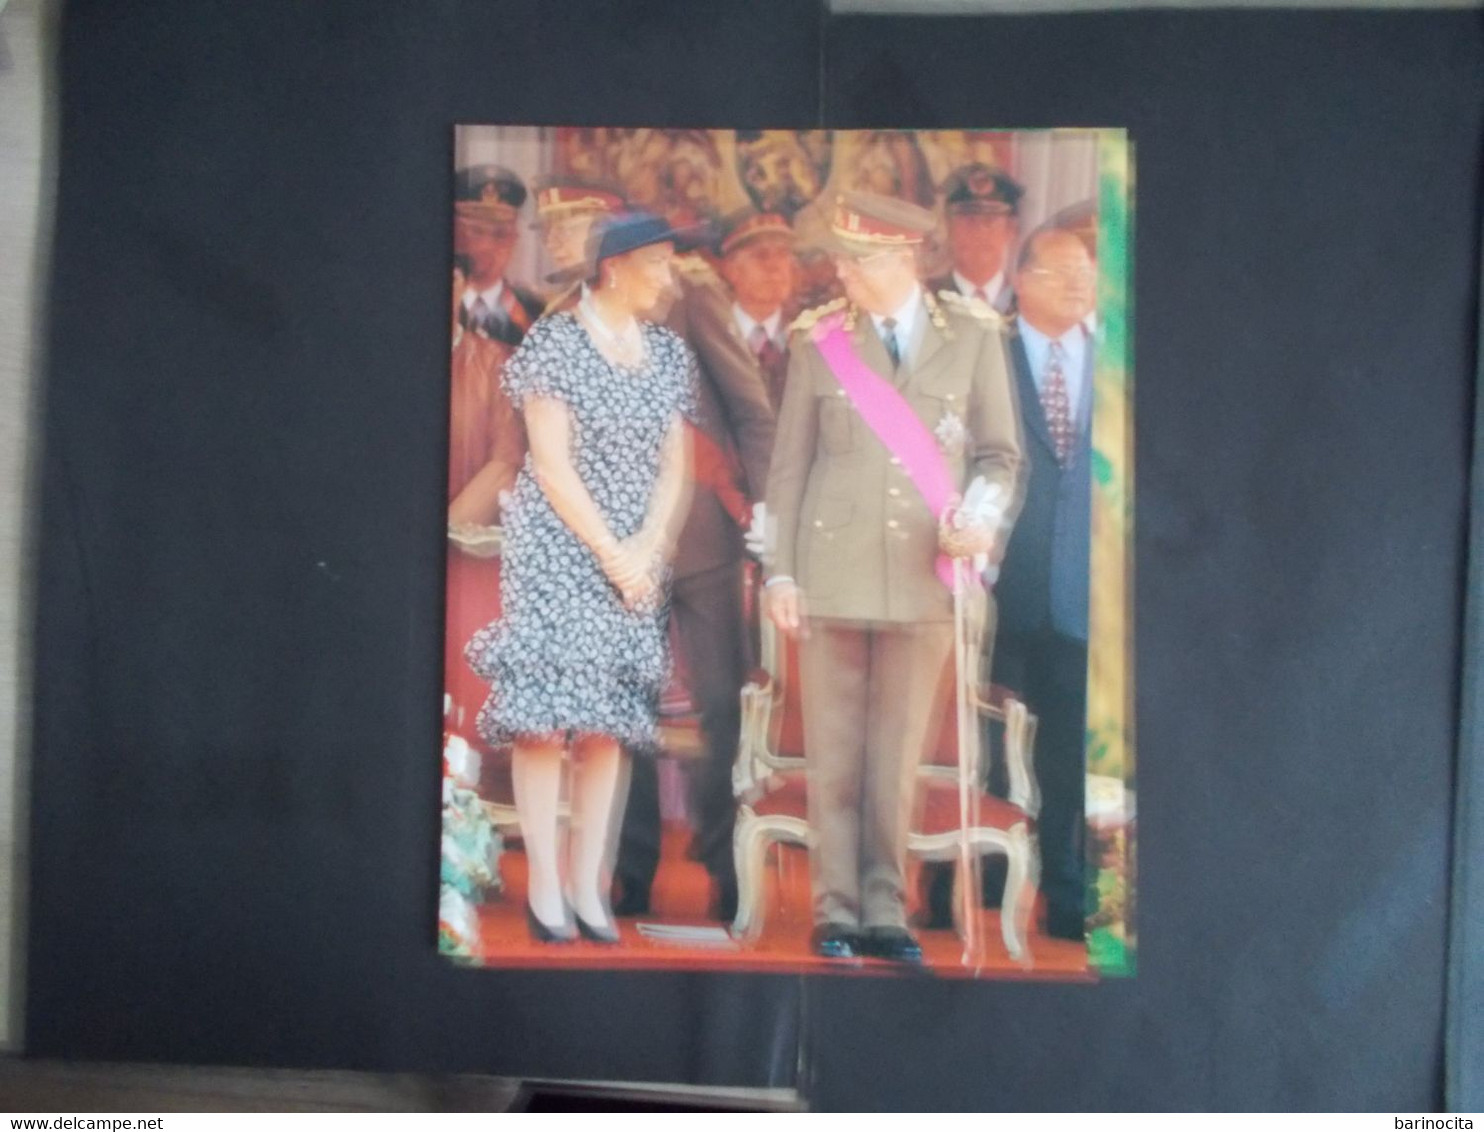 BELGIQUE -  POCHETTES SOUVENIRS  des 40 ans de mariage Albert 1er / Paola - année 1999   voir photo